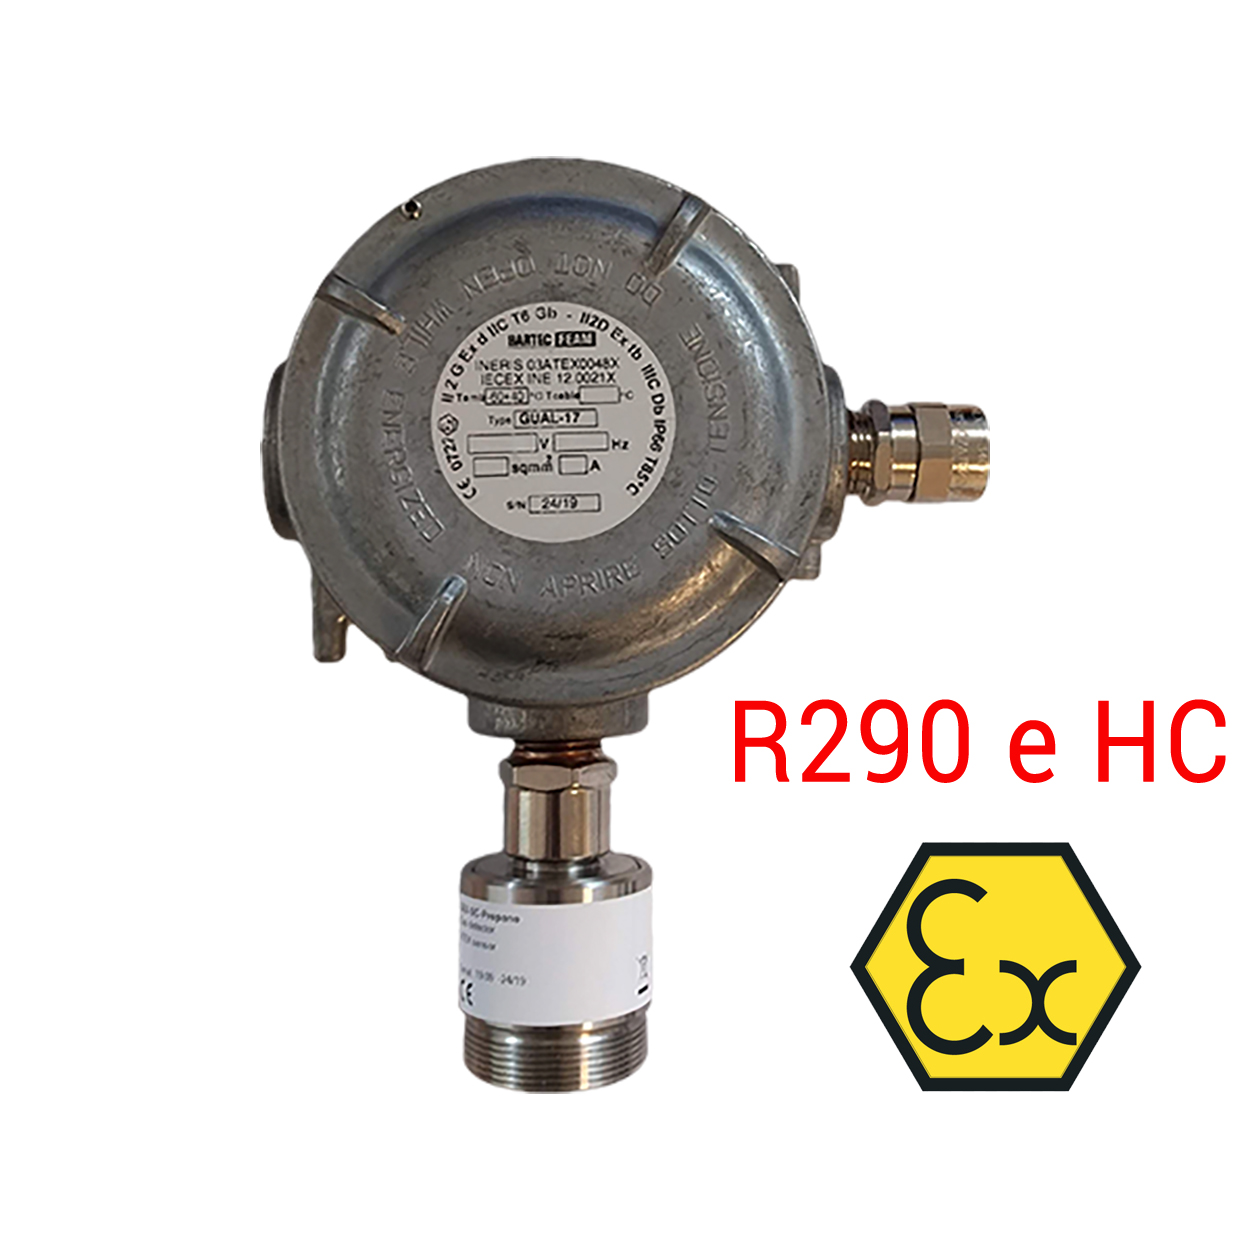 SAMON GEX (R290 e HC) – Rilevatore per R290 e idrocarburi, per collegamento a centrale MPU - sensore a semiconduttore (SC)